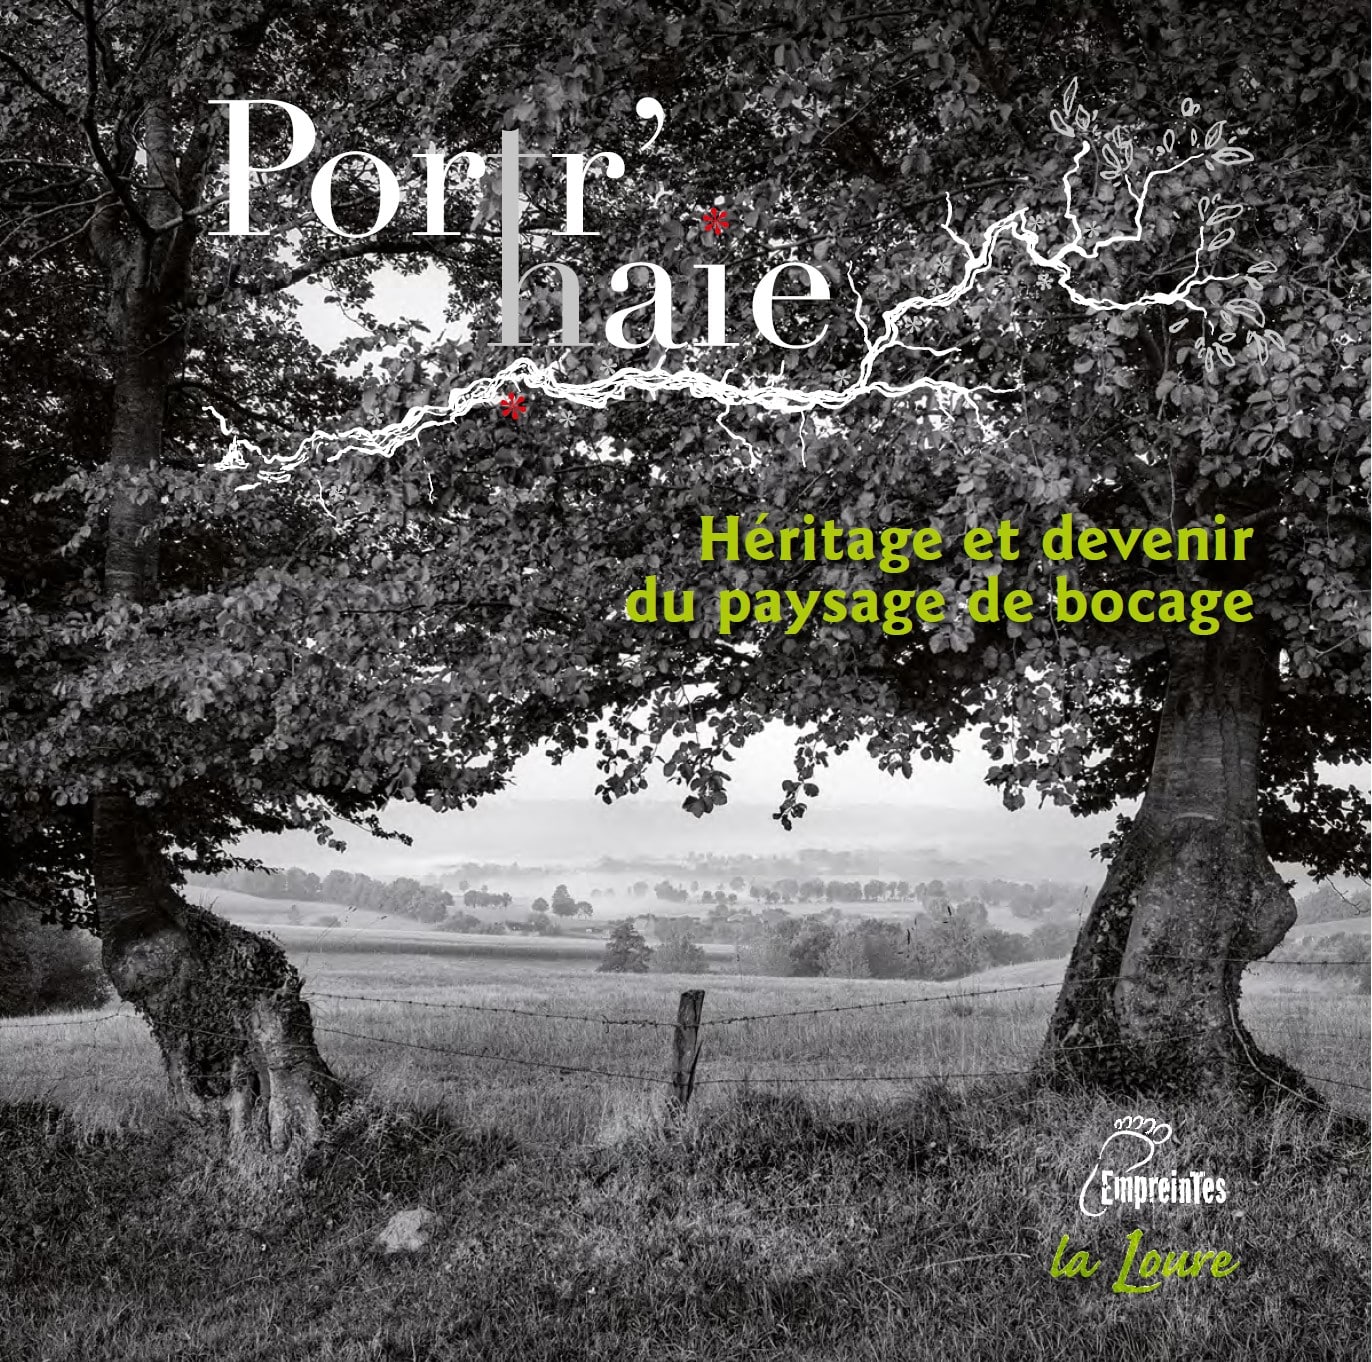 L'ouvrage Portr'haie dévoile tout un héritage de savoirs et de pratiques liées au bocage normand et aborde le devenir de ce paysage.